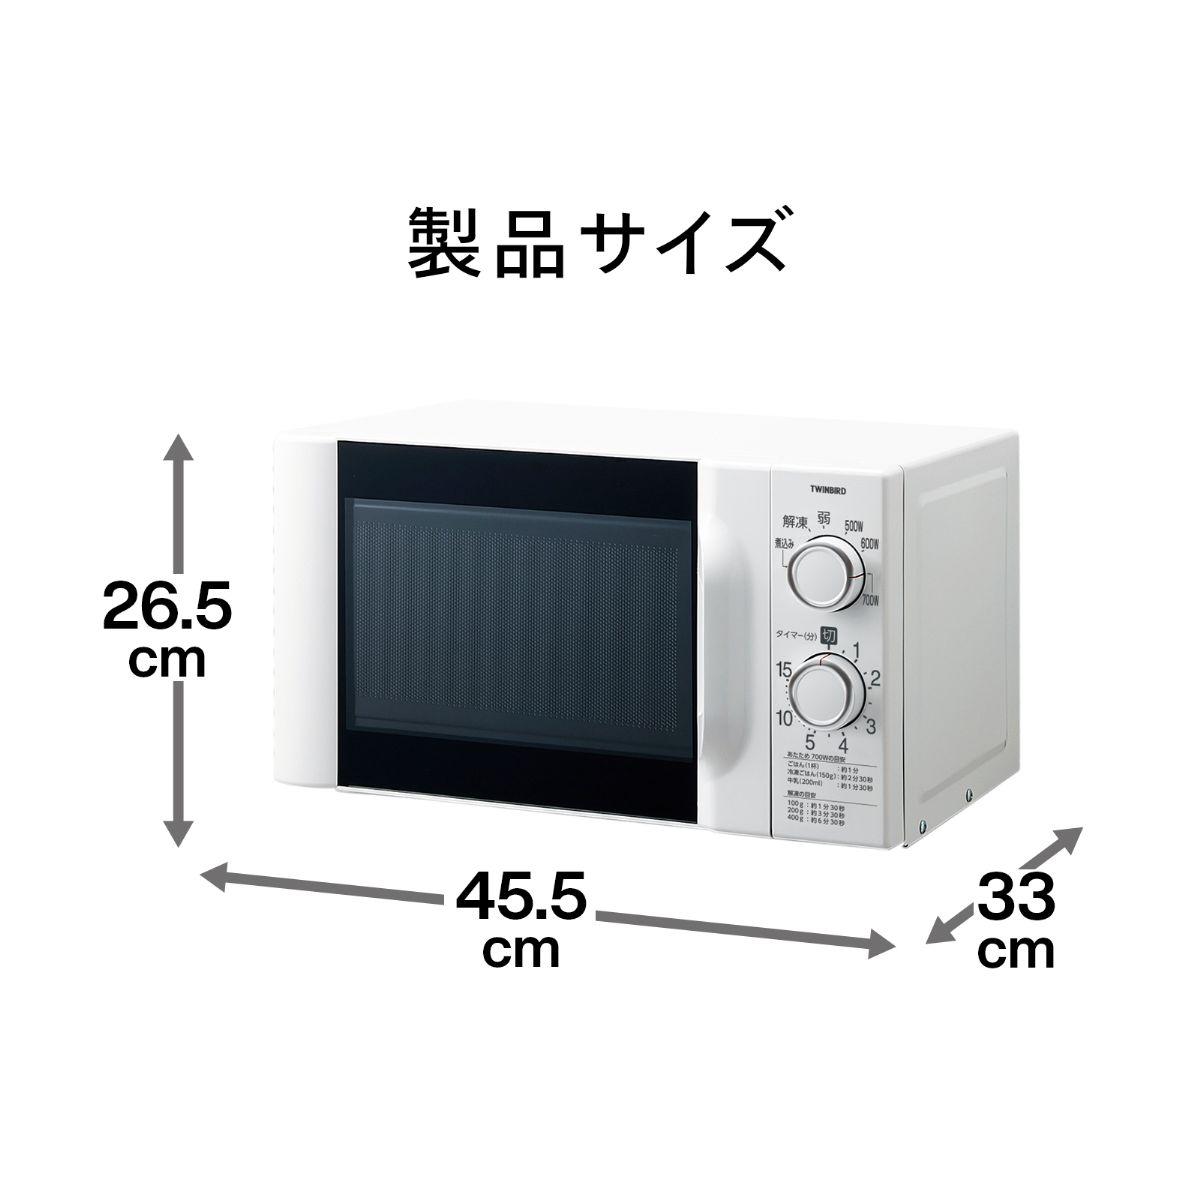 ツインバード 電子レンジ 50hz 東日本専用 DR-D419W5